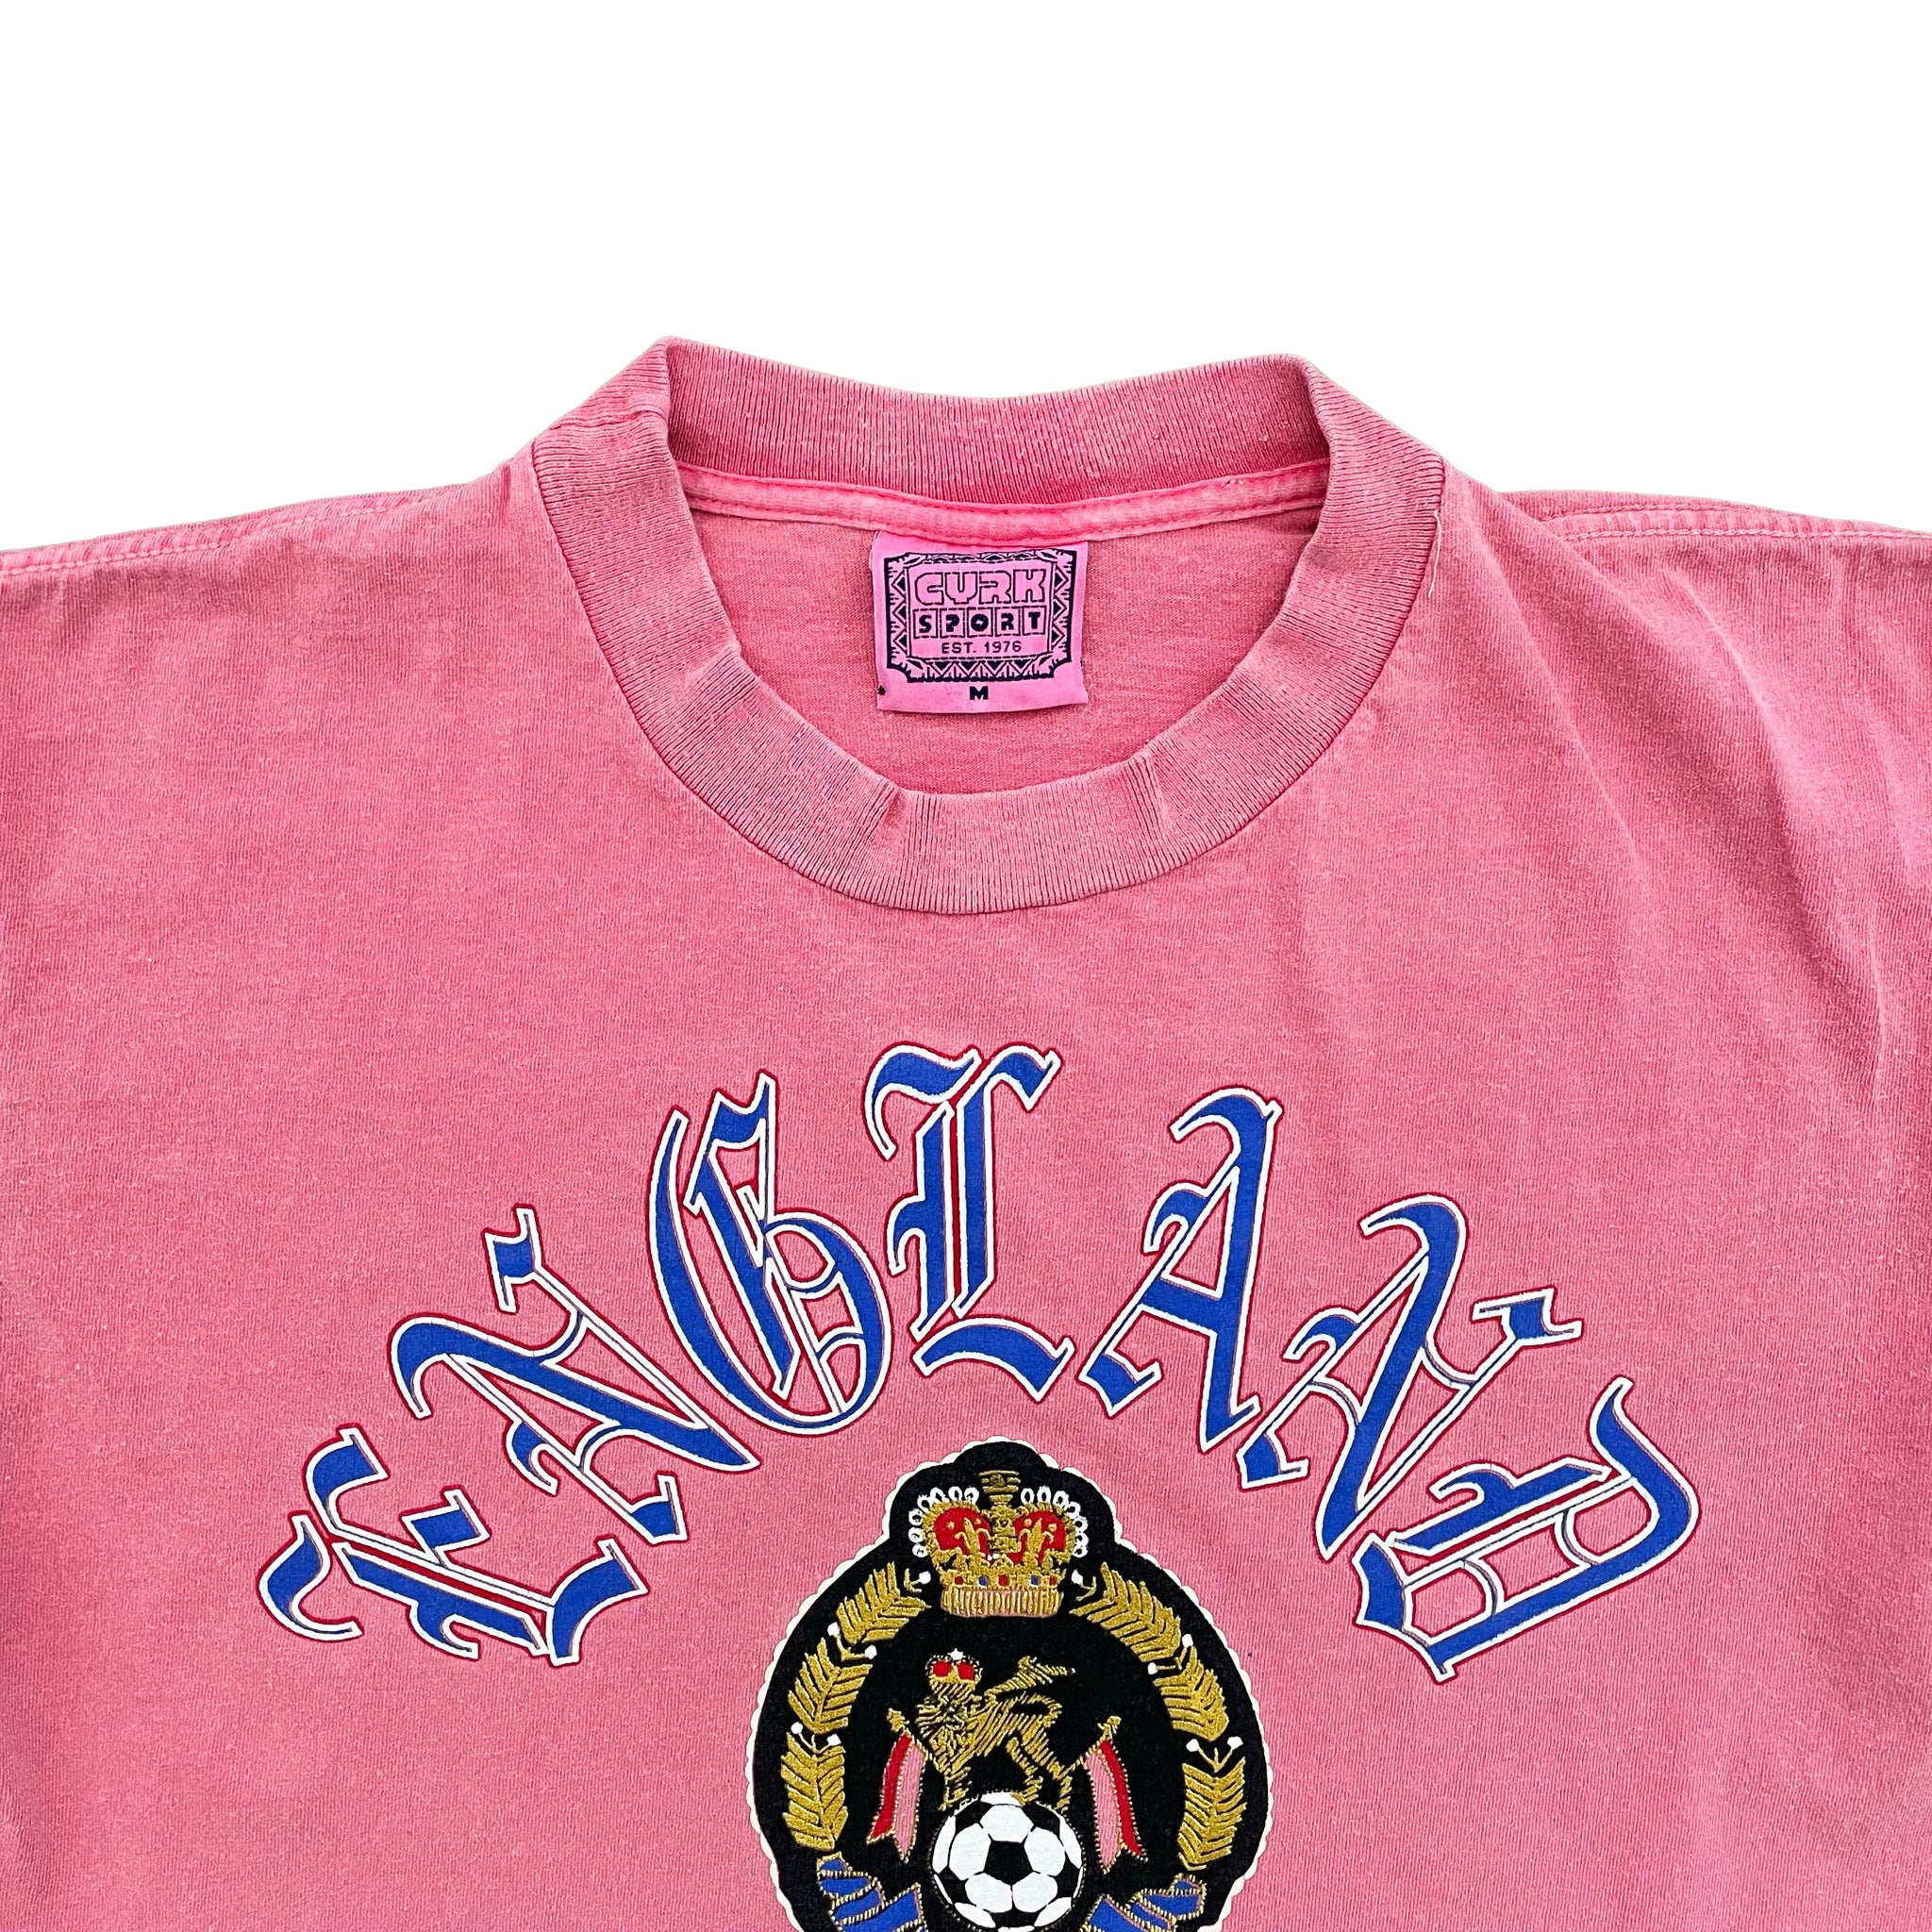 England Football Club T-Shirt - M